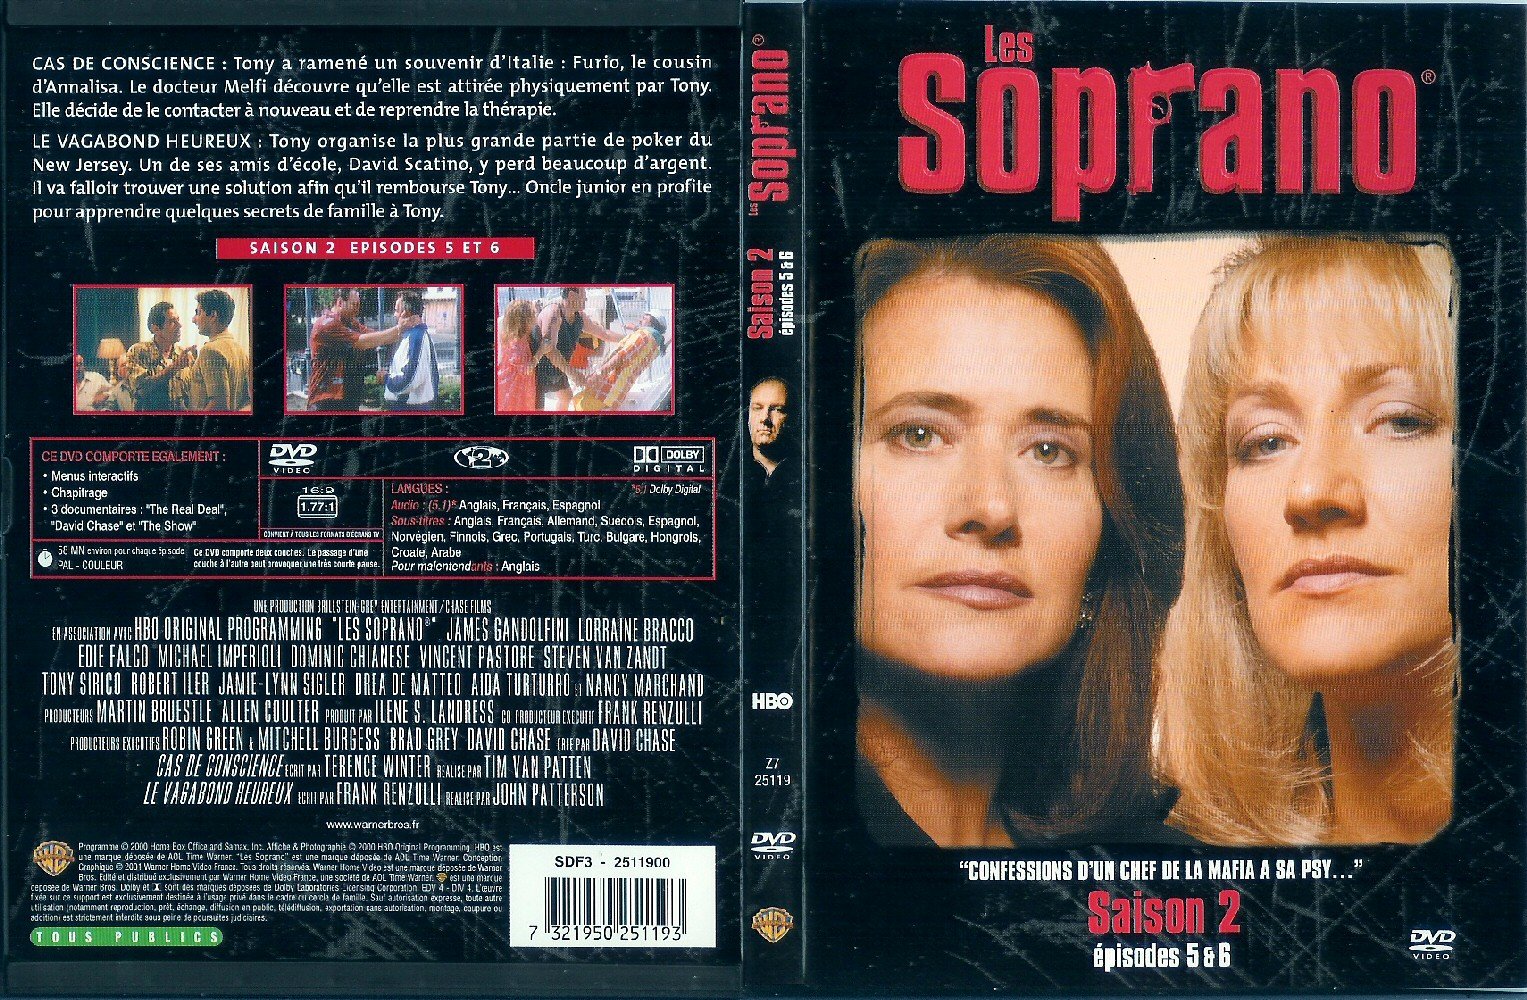 Jaquette DVD Les Soprano Saison 2 vol 3